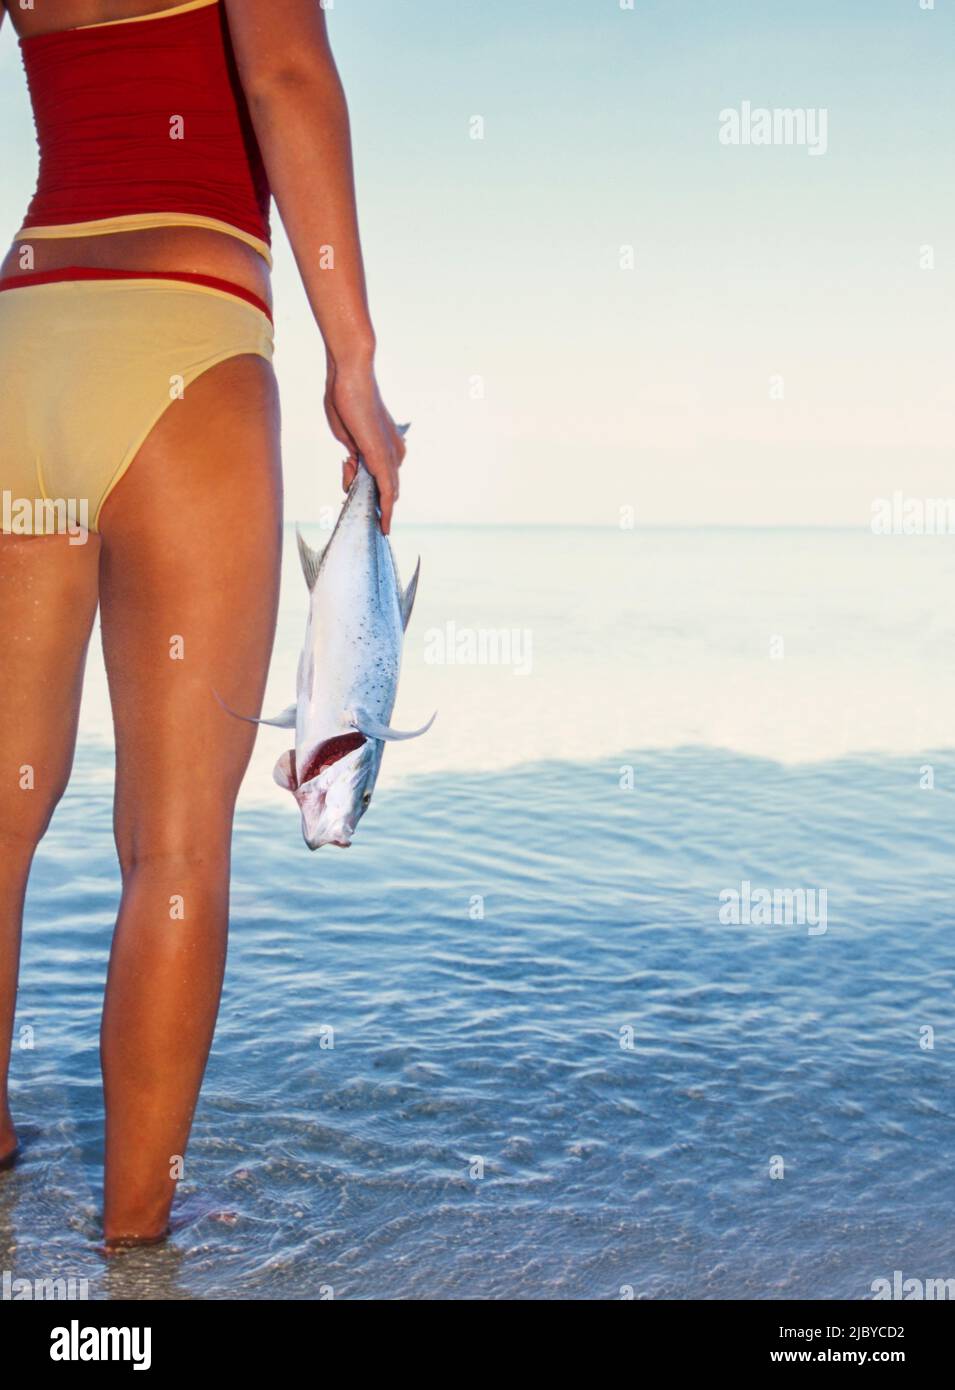 Junge Frau in zweiteiligem Badeanzug, die im tropischen Wasser steht und Fische hält Stockfoto